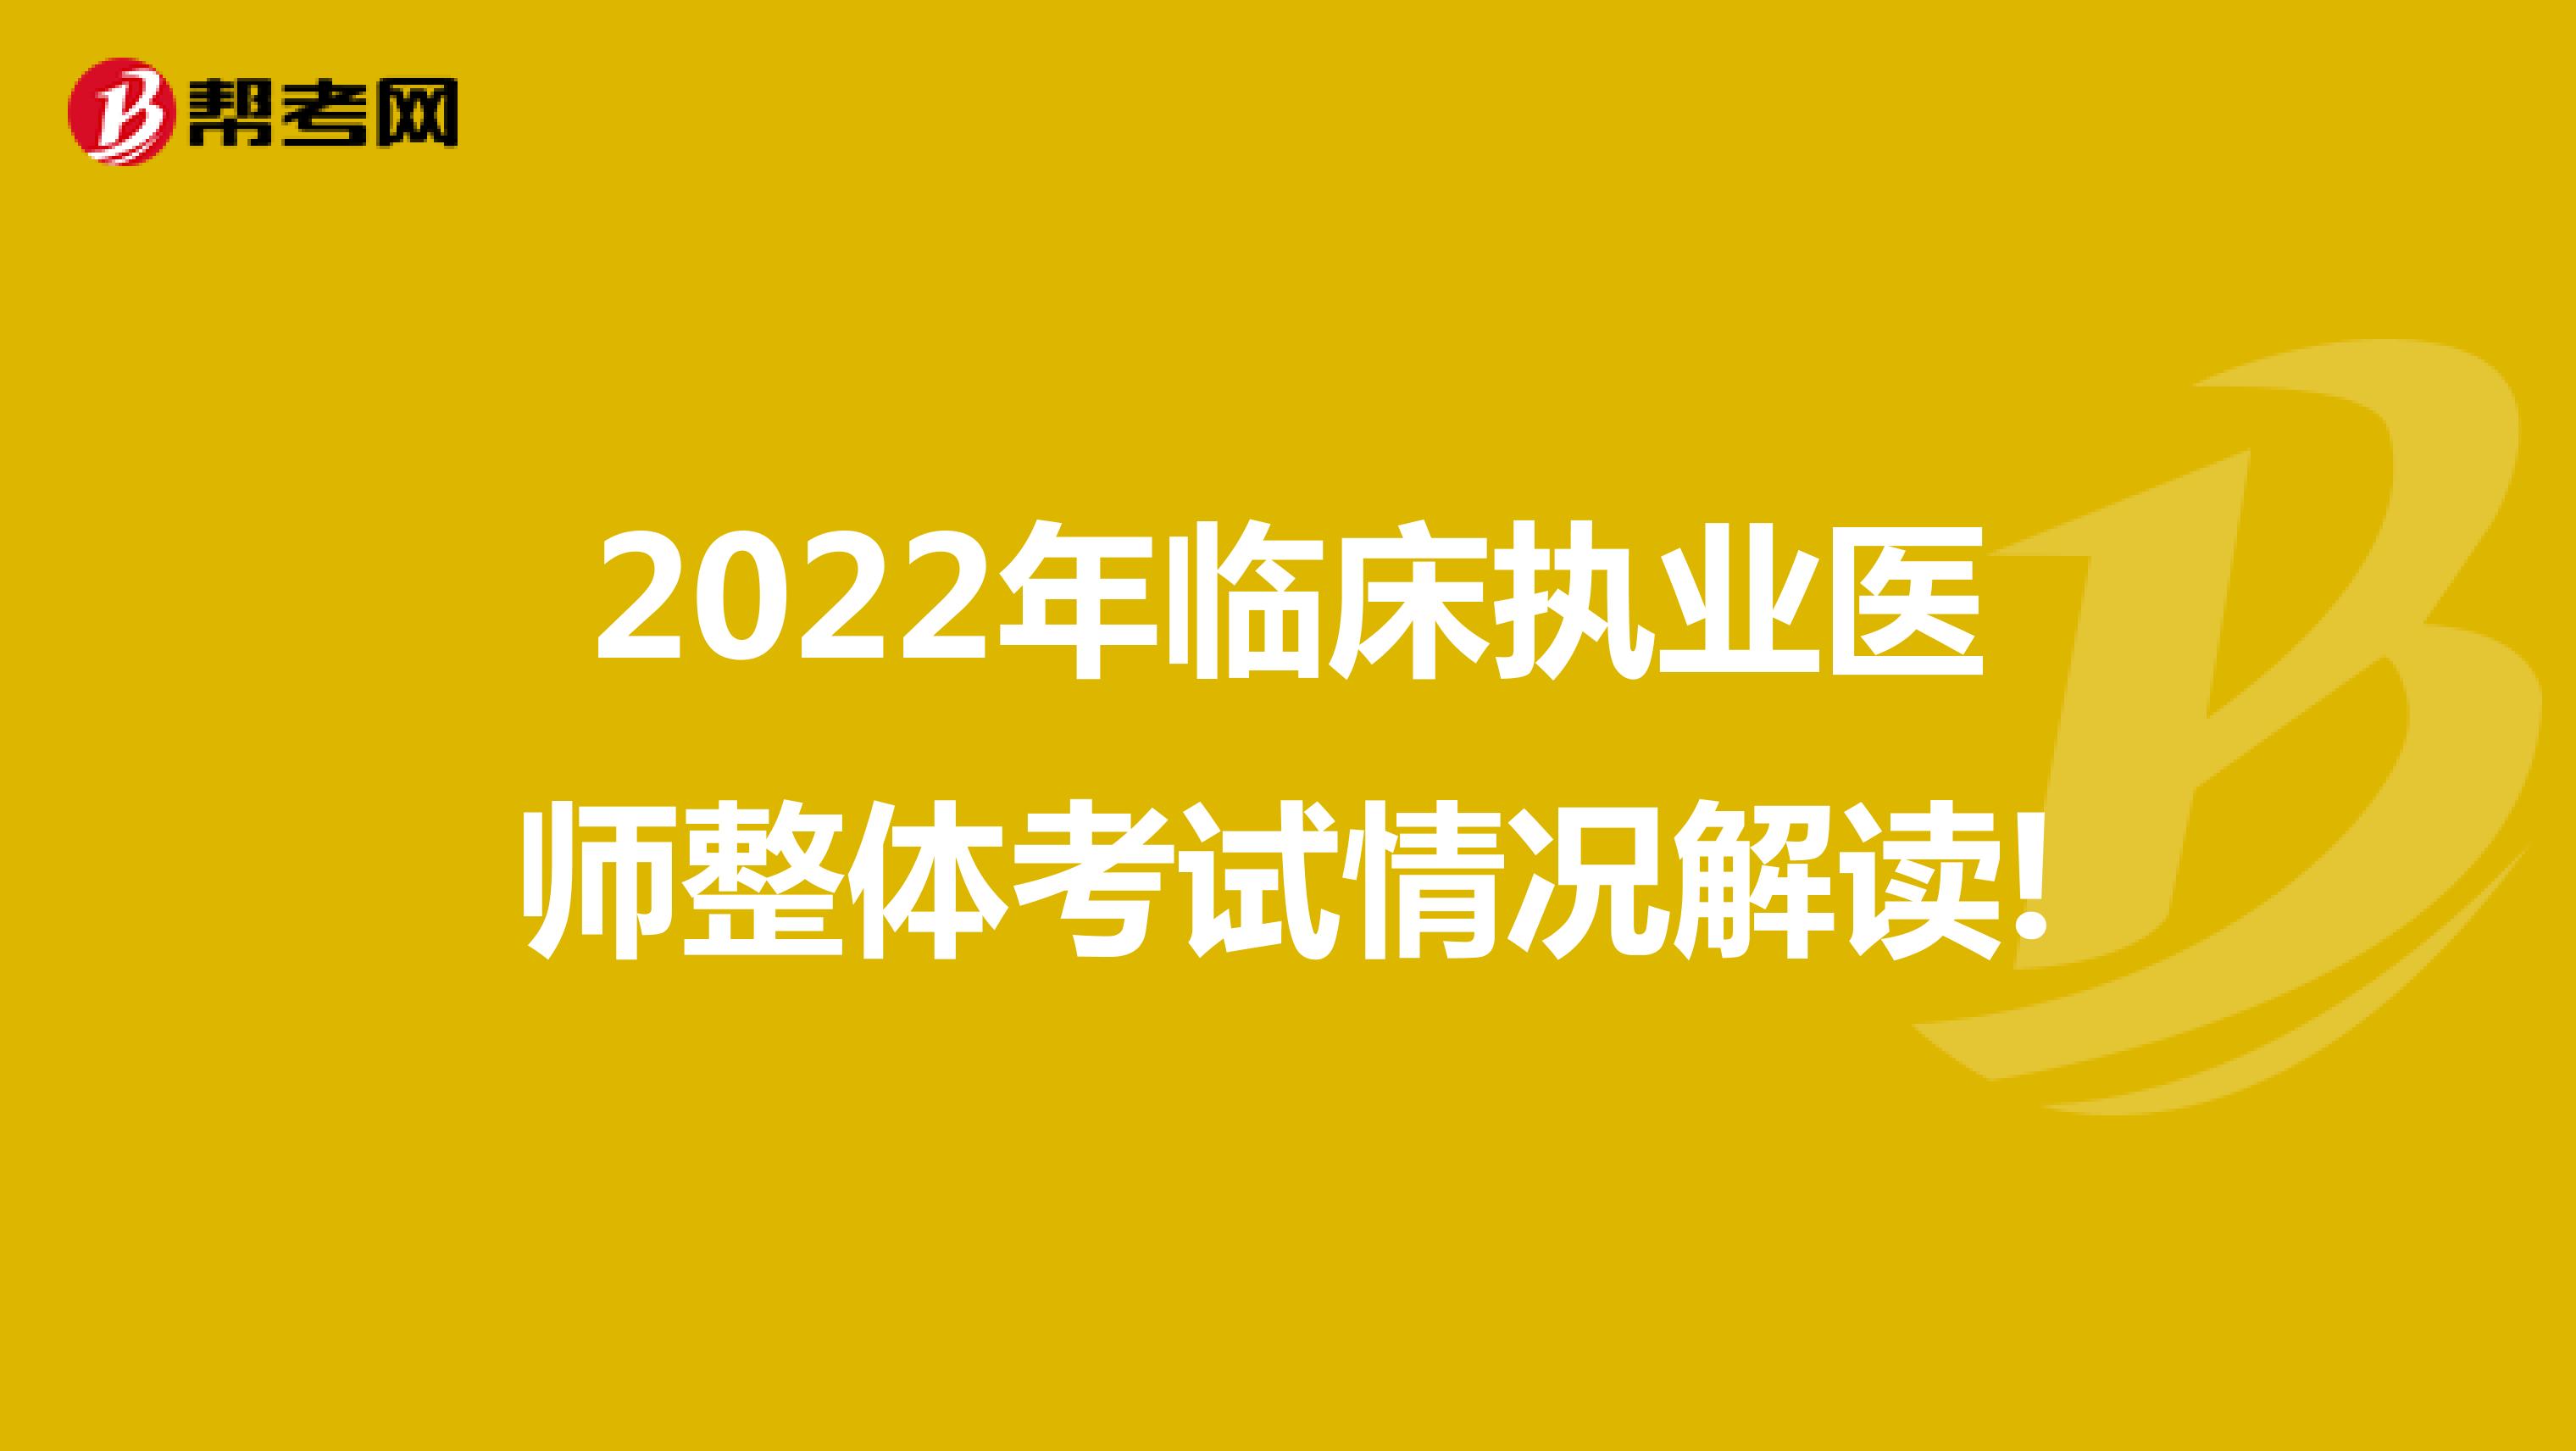 2022年临床执业医师整体考试情况解读!